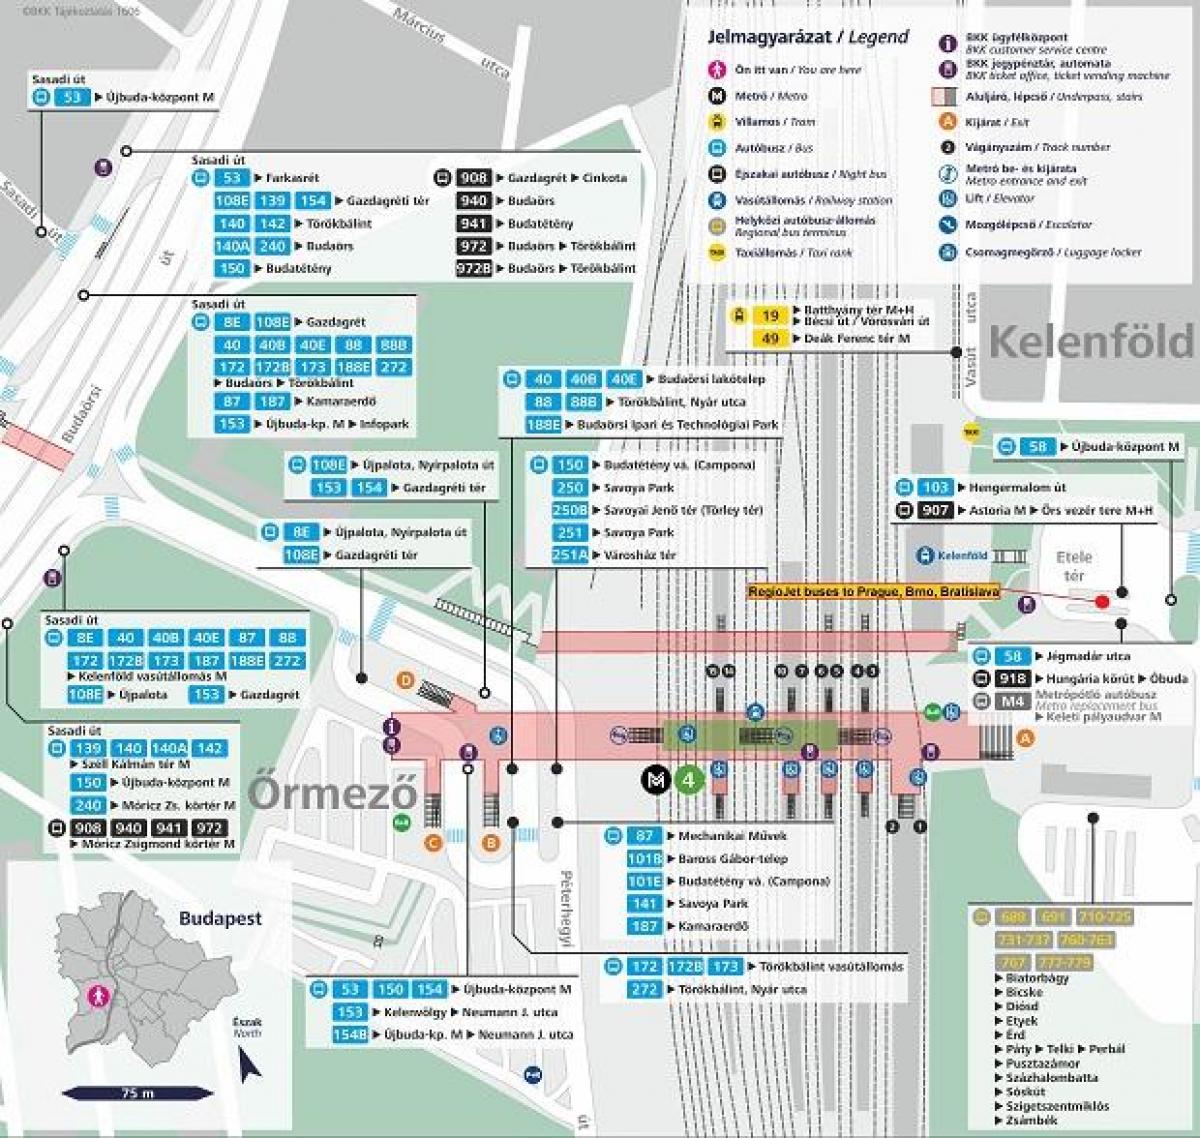 kort over budapest kelenfoe station